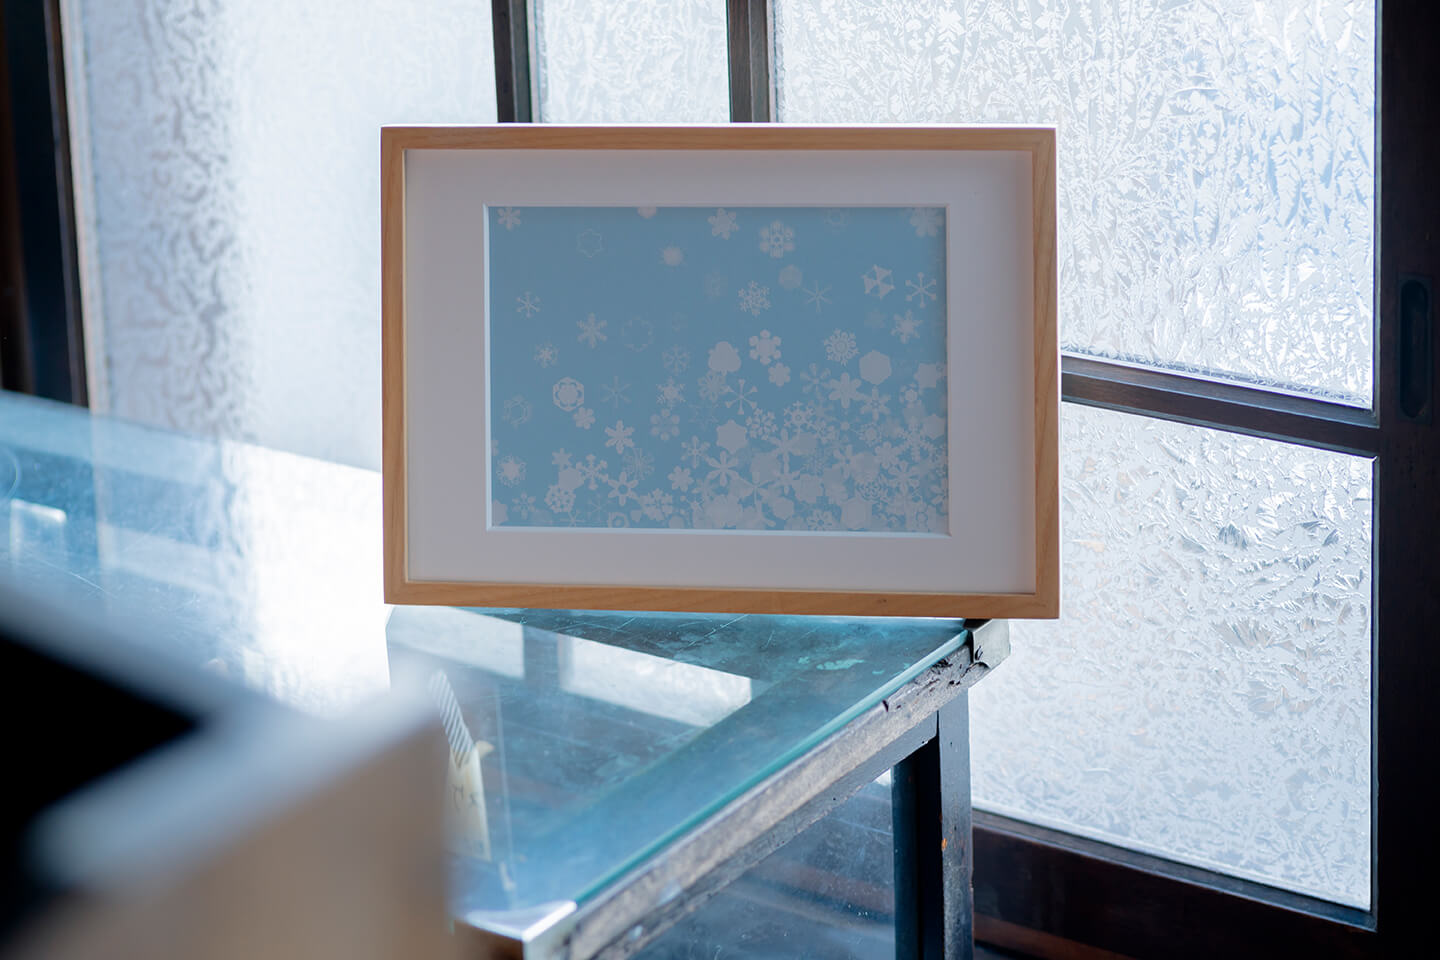 「小雪」芳木 麻里絵　シルクスクリーン<br/>
200年ほど前、江戸時代のお殿様が雪の結晶を観察してまとめた『雪華図説』をもとに制作しました。<br/>これから迎える冬を想像して澄んだ青い空に小さな雪を散らしました。